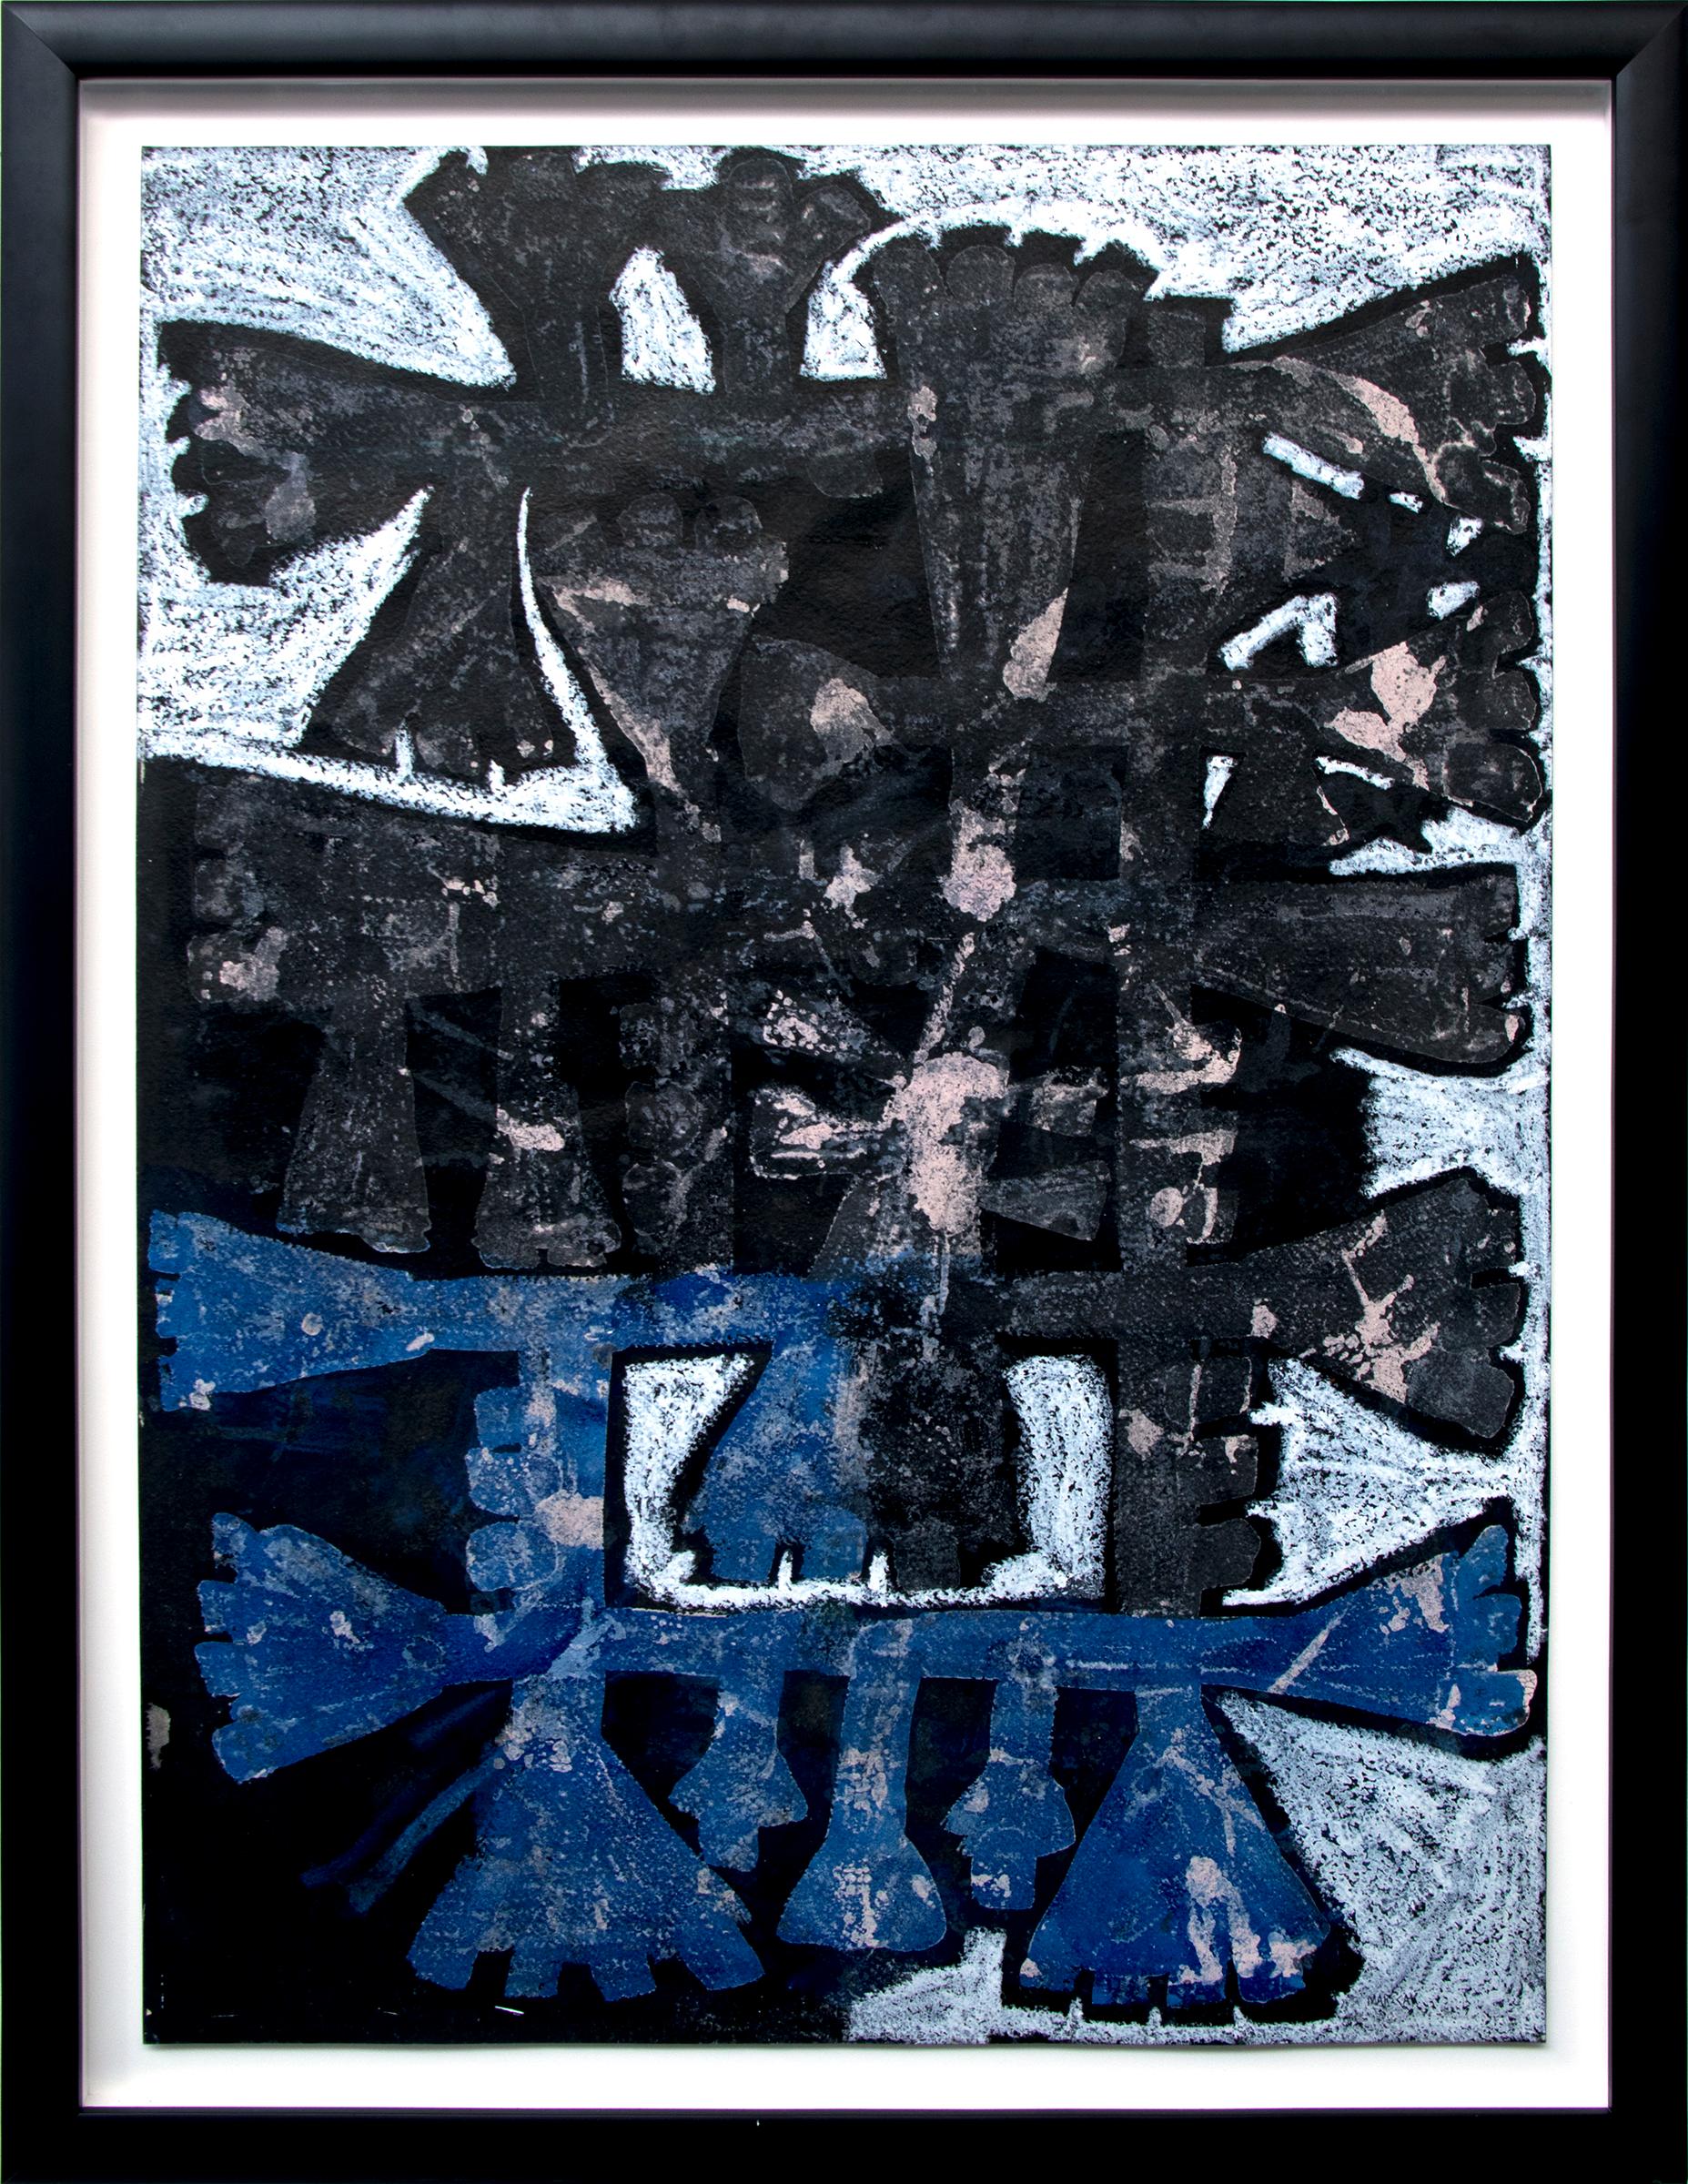 Peinture acrylique abstraite technique mixte sans titre n° 21 des années 1970, formes noires et bleues - Mixed Media Art de Edward Marecak